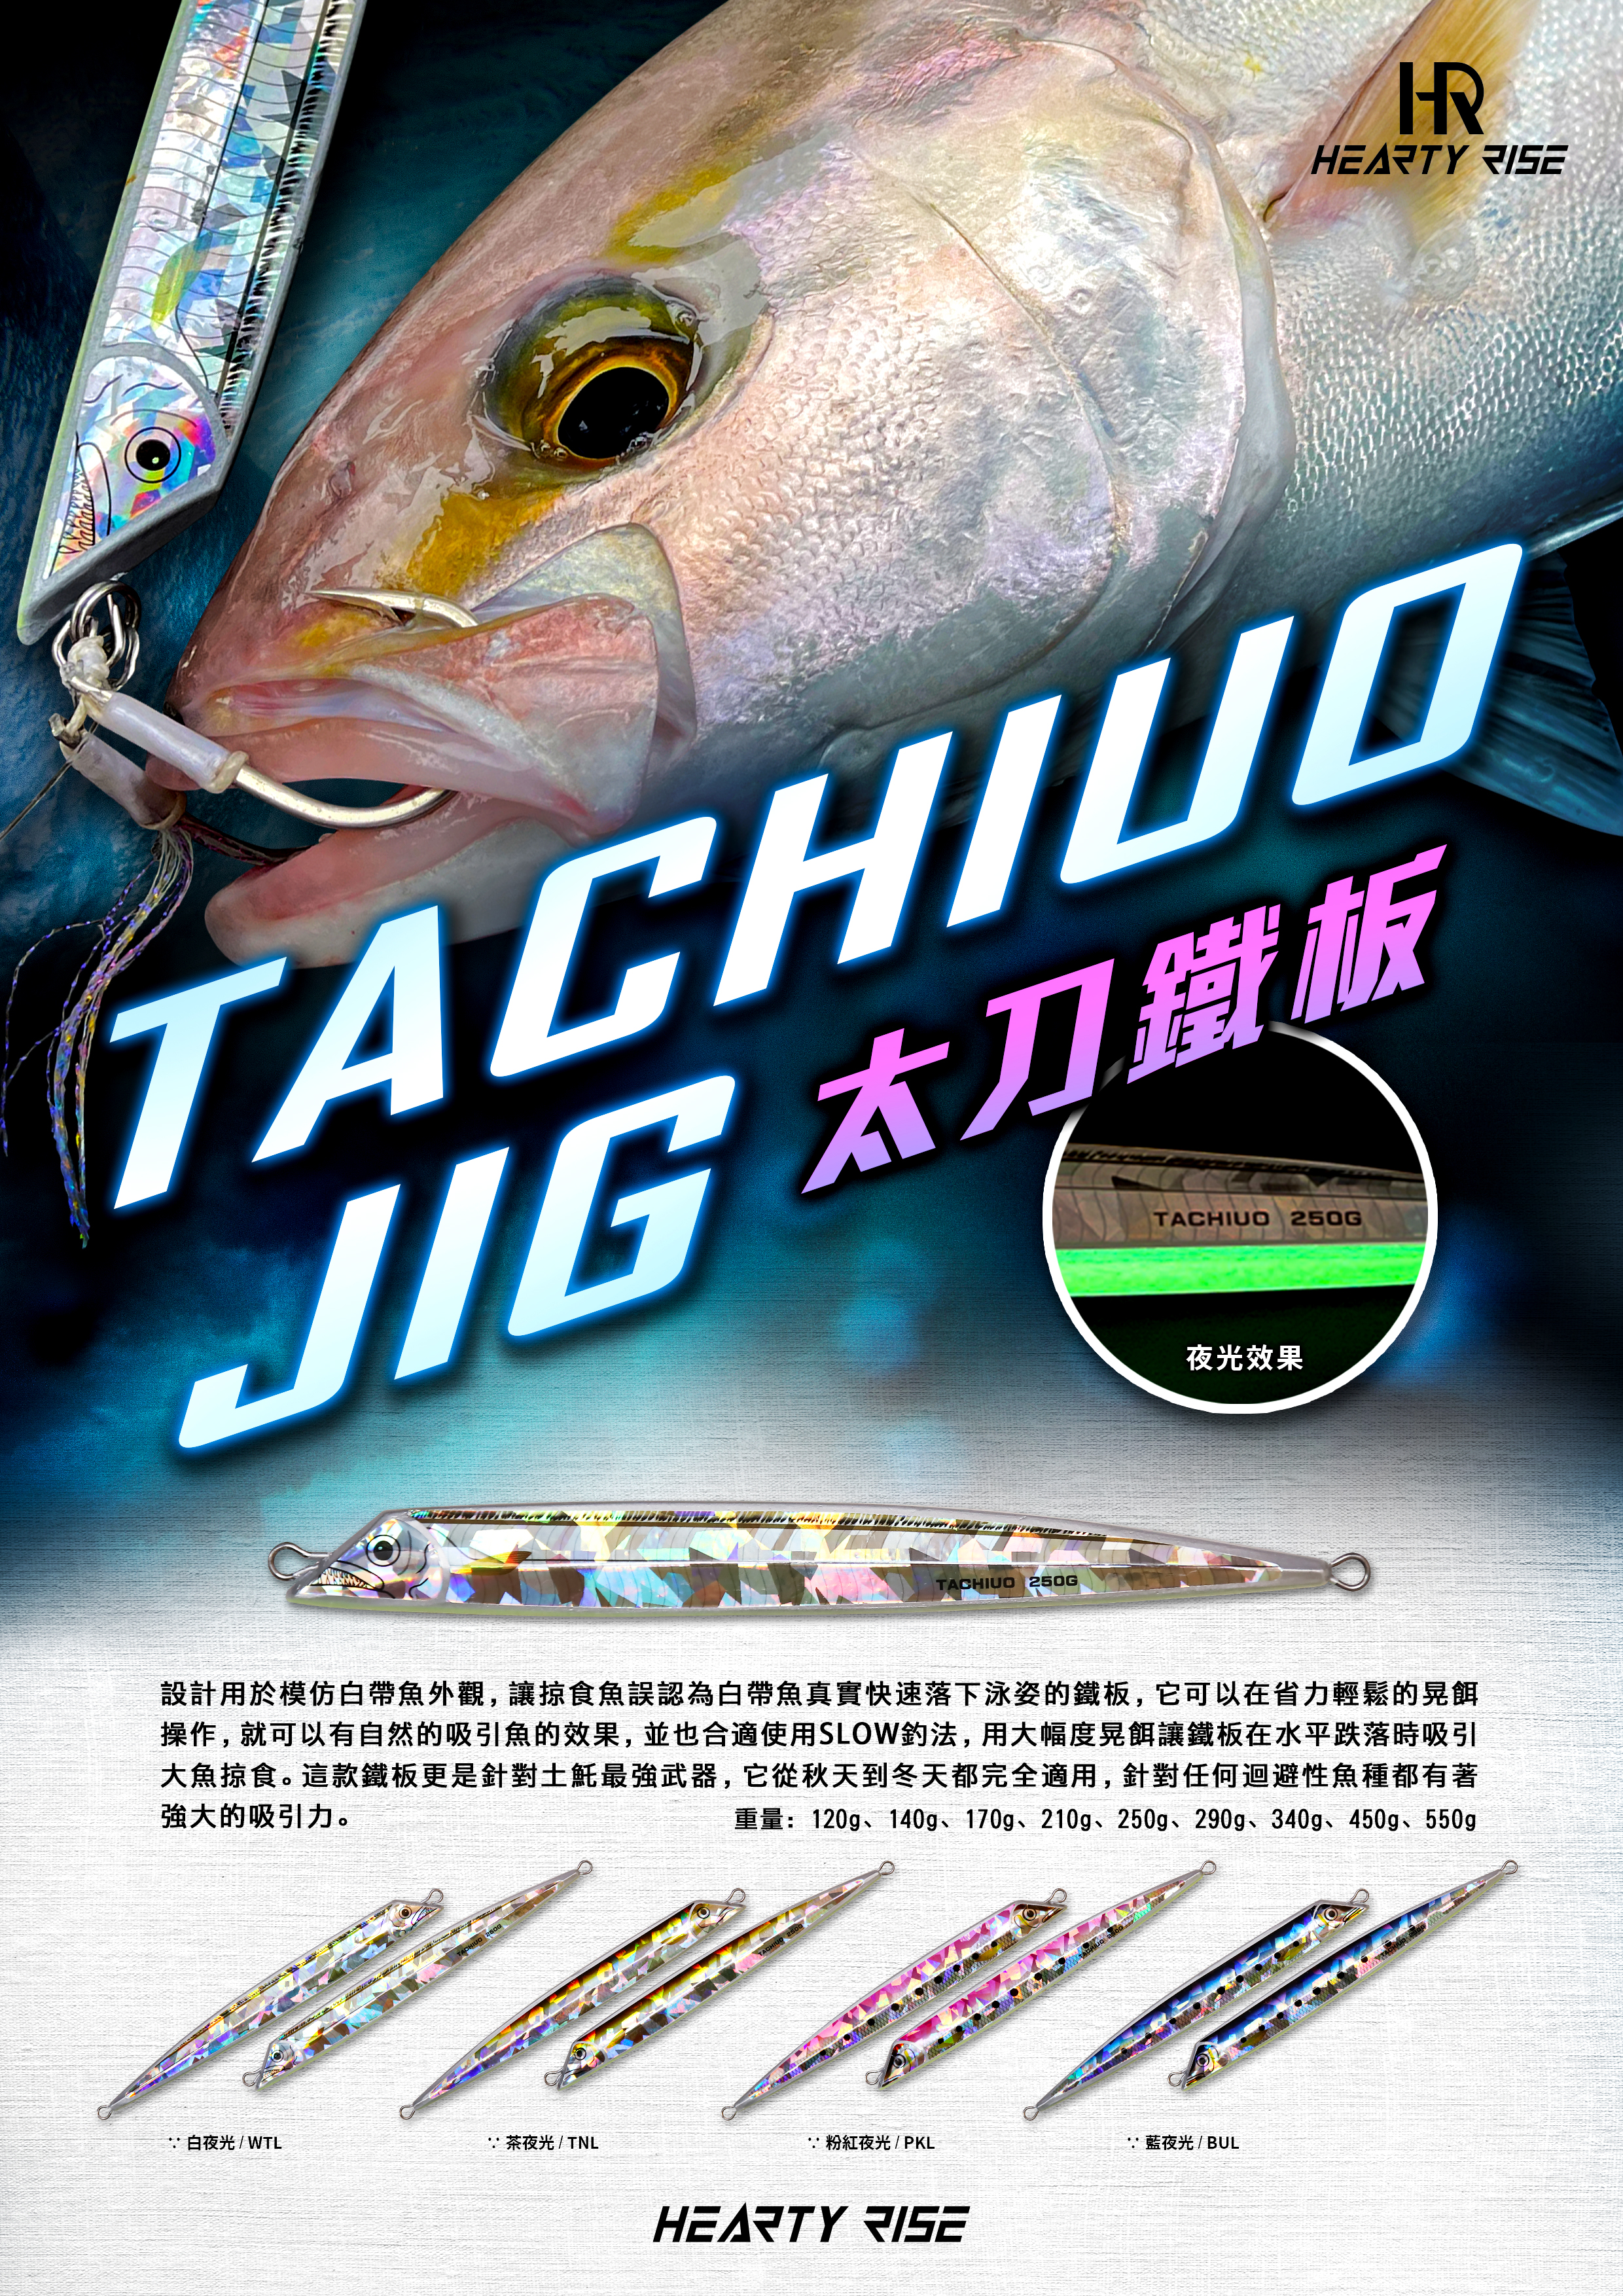 HR TACHIUO JIG 太刀鐵板 A4-5